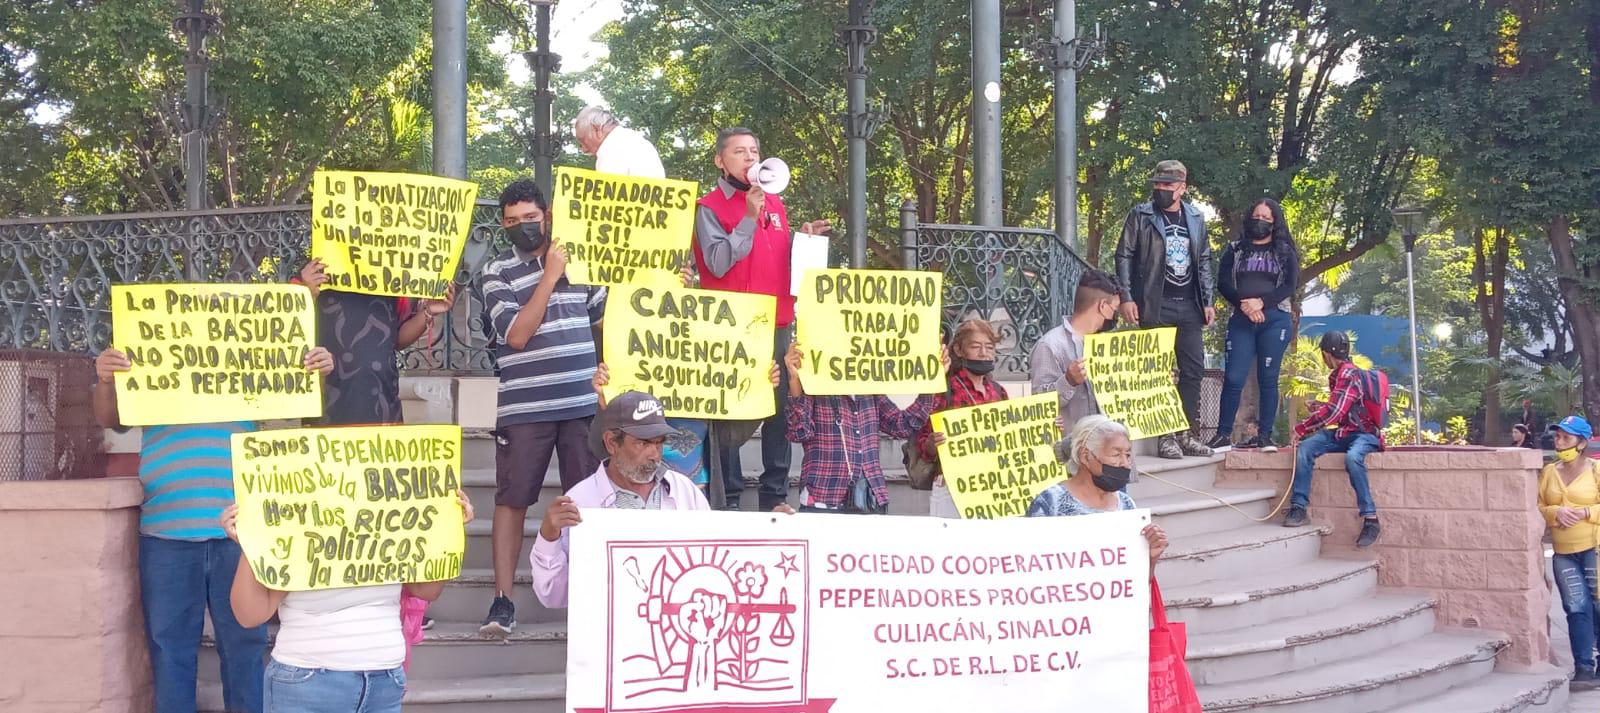 $!Pepenadores de Culiacán protestan contra posible privatización del basurón